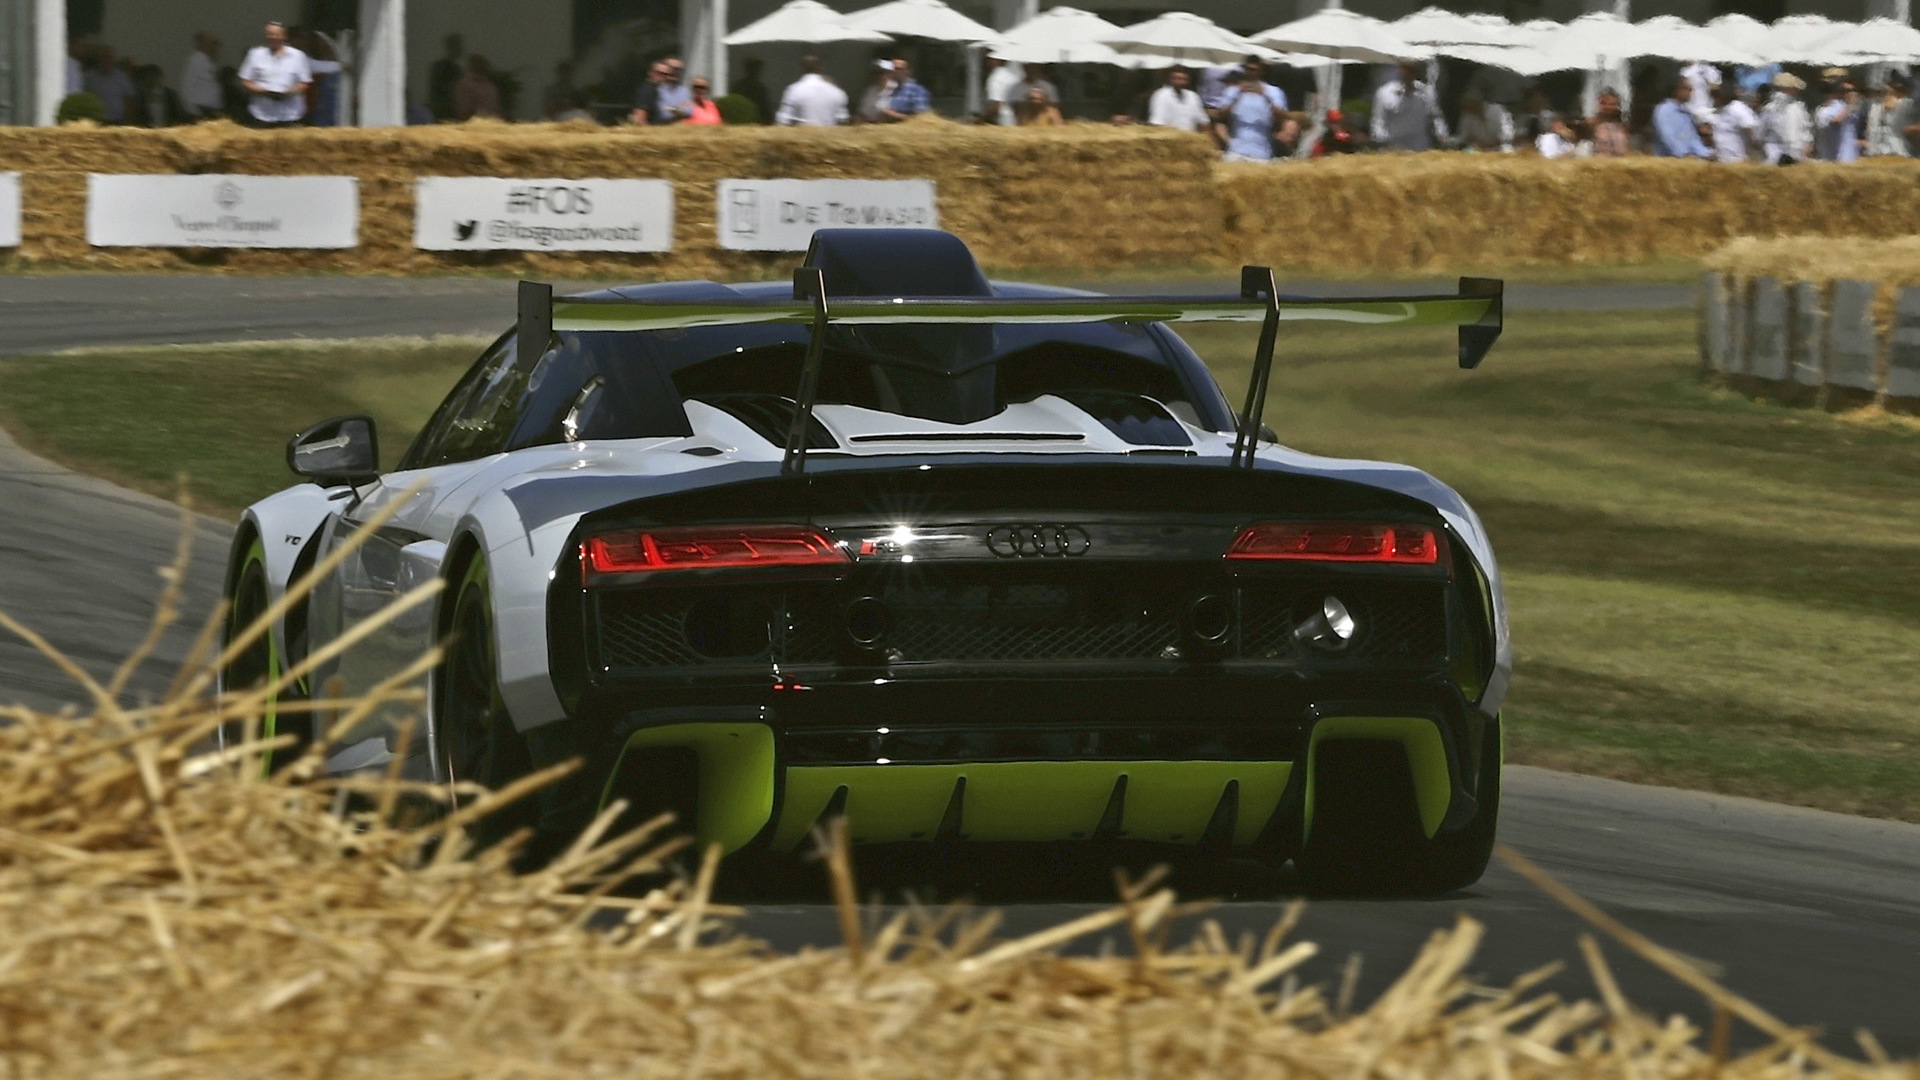 2020 Audi R8 LMS GT2 race car concept